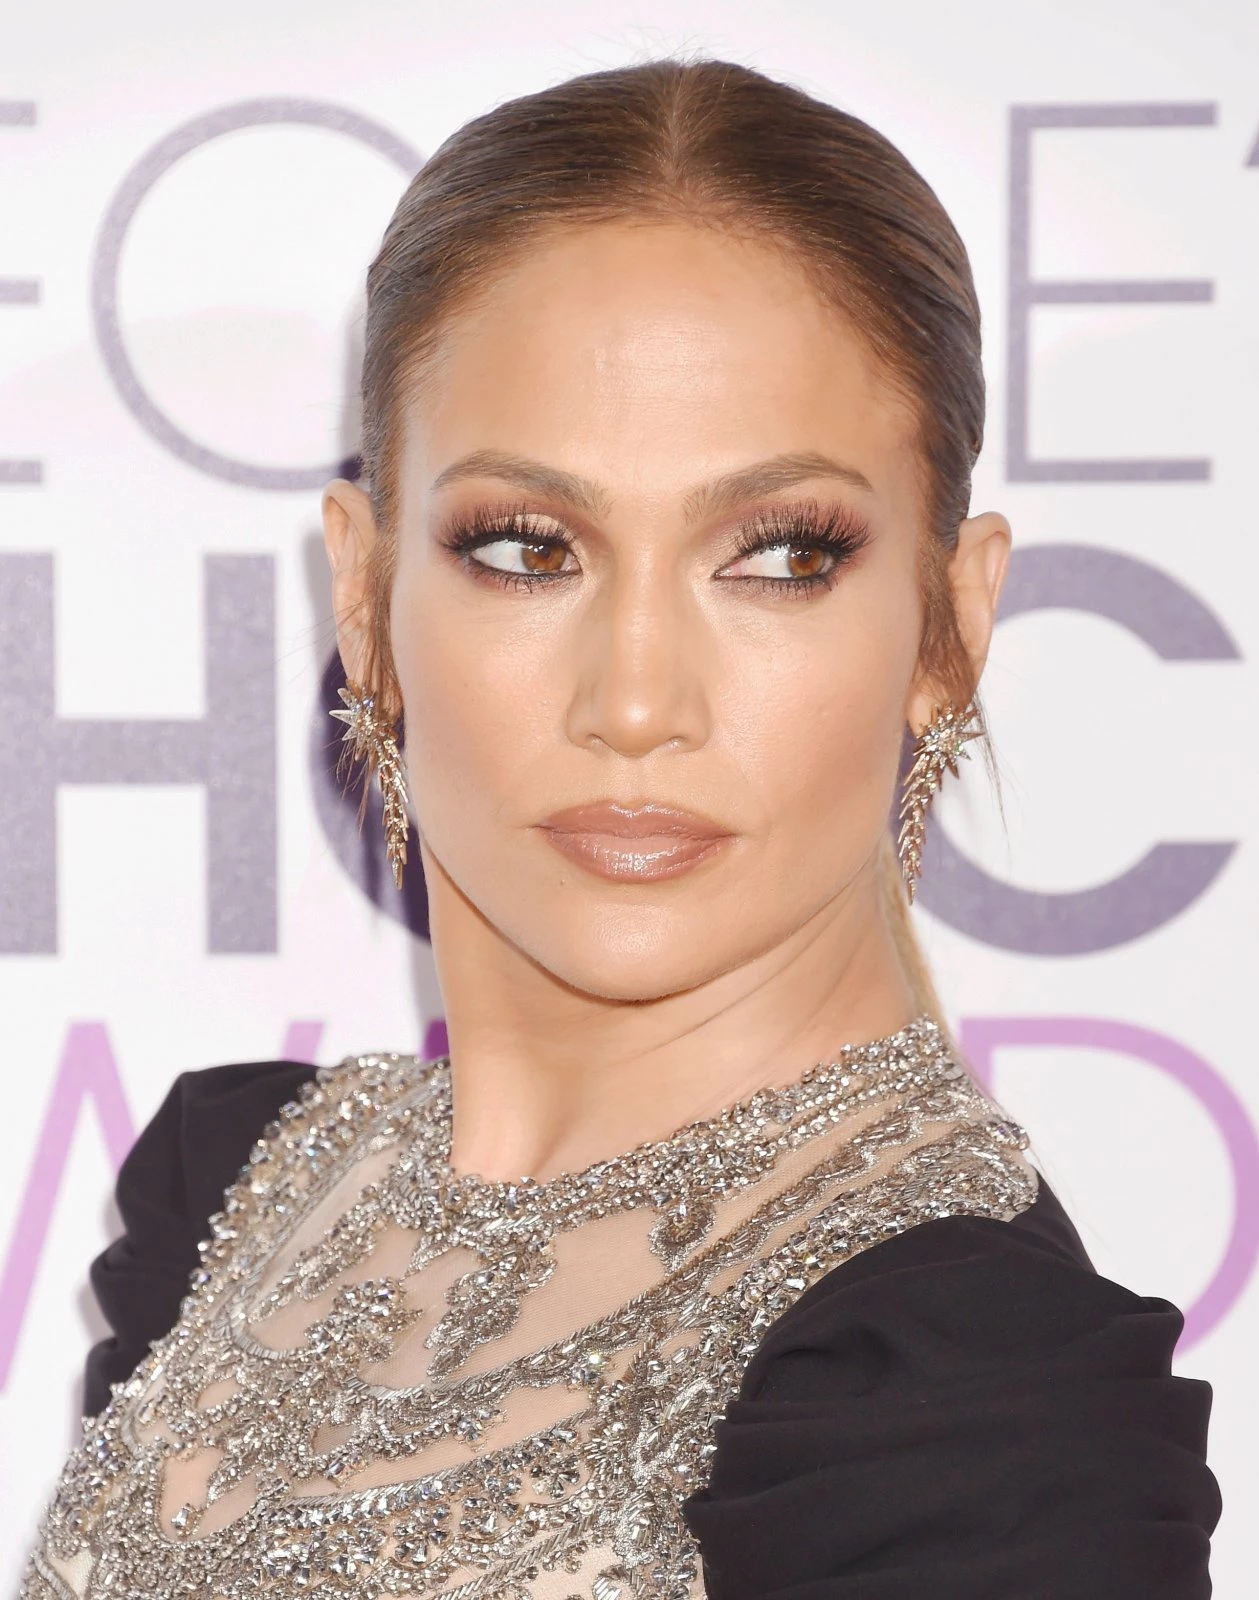 Βρέθηκαν: Αυτά τα highlighters θα σε κάνουν να λάμπεις σαν την Jennifer Lopez